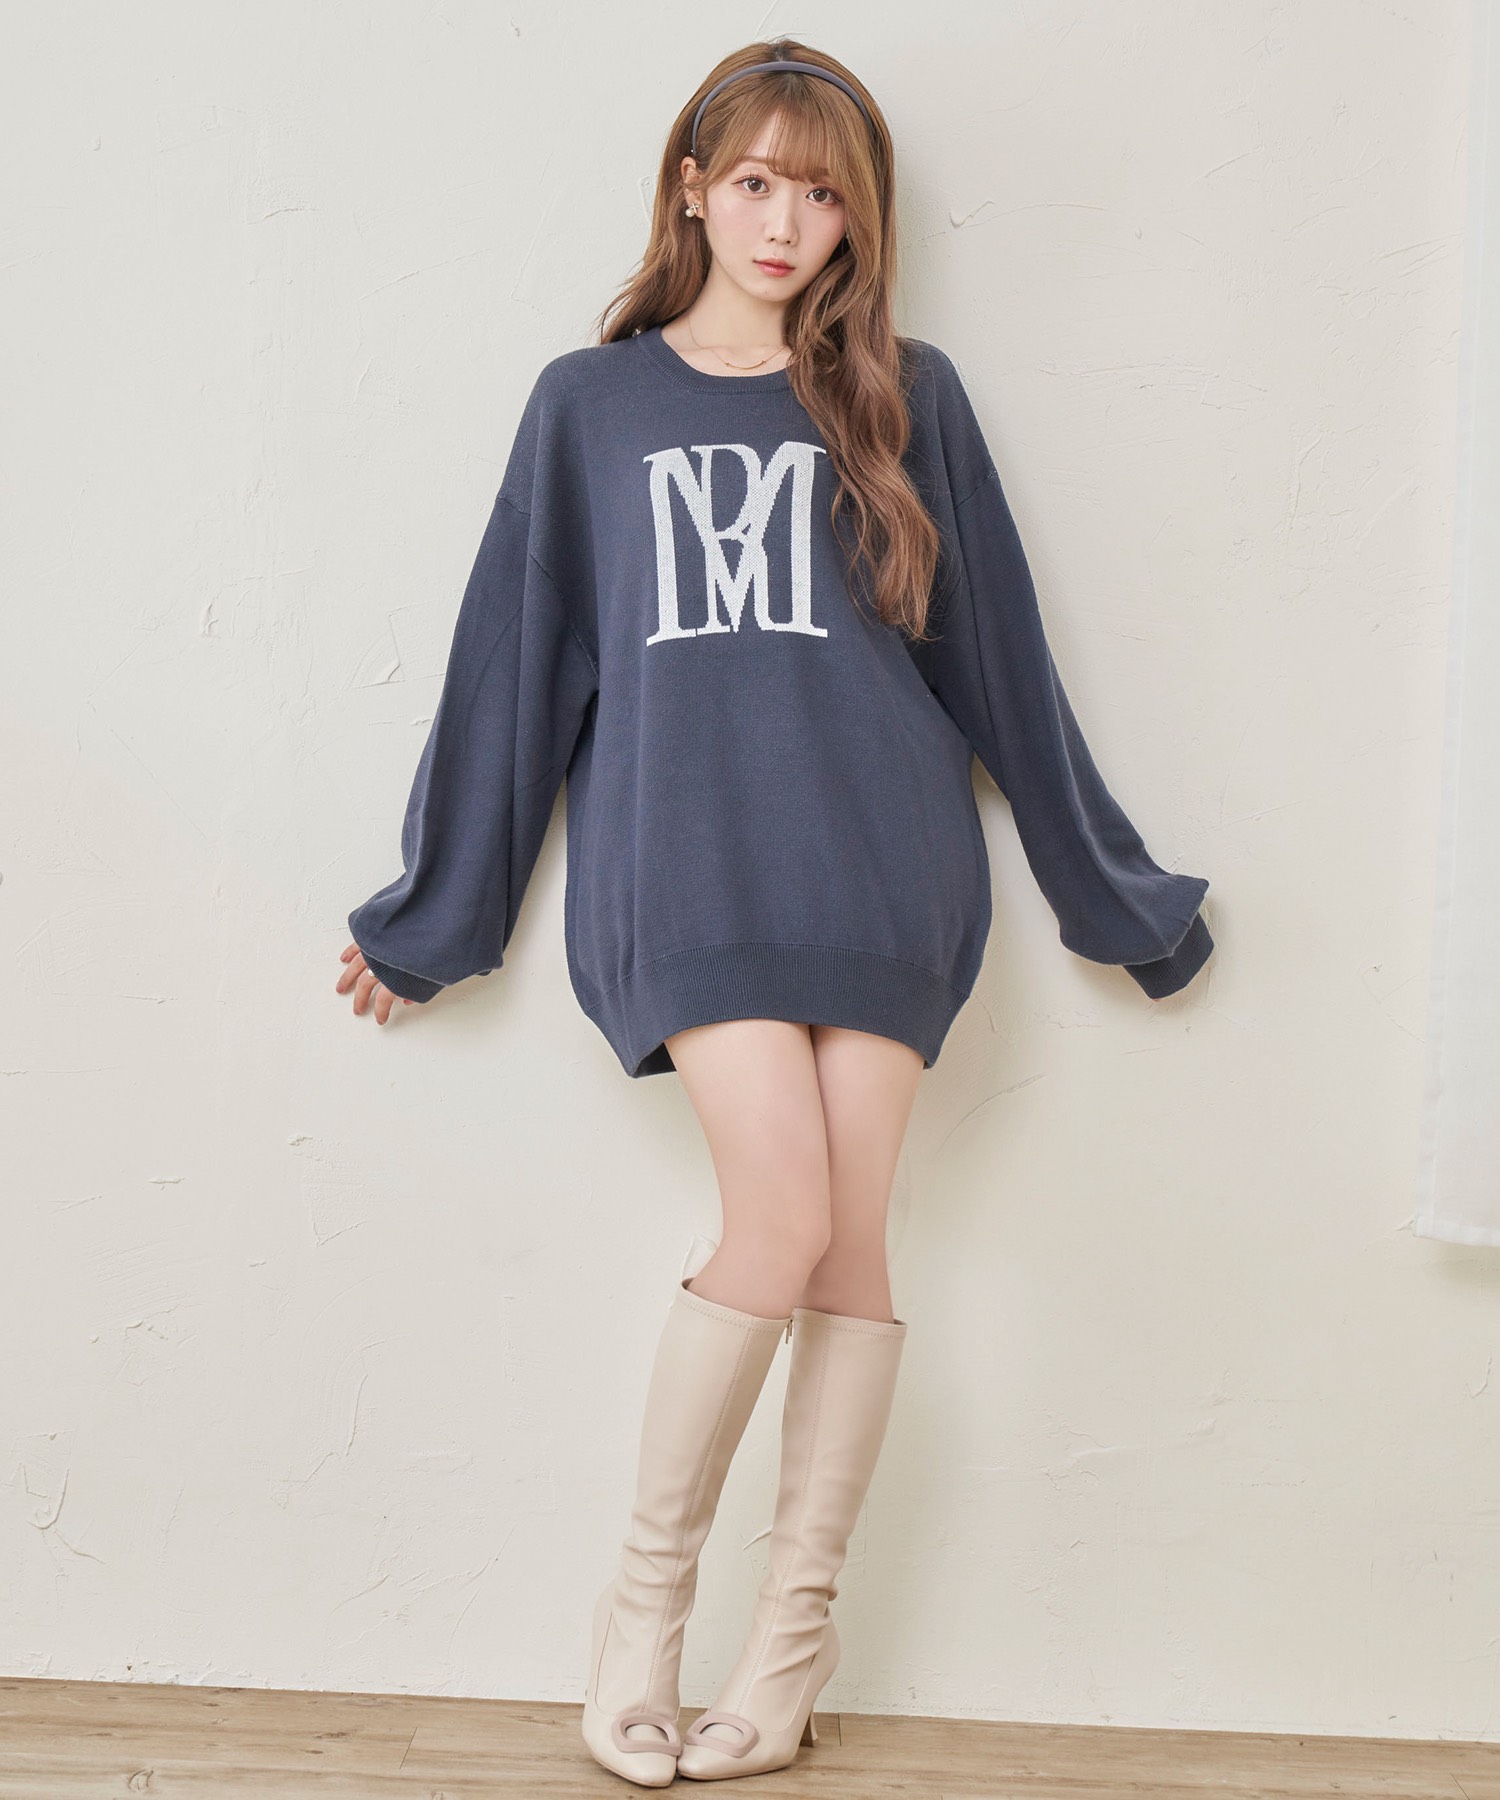 Rosé Muse RM logo knit_L size【navy】